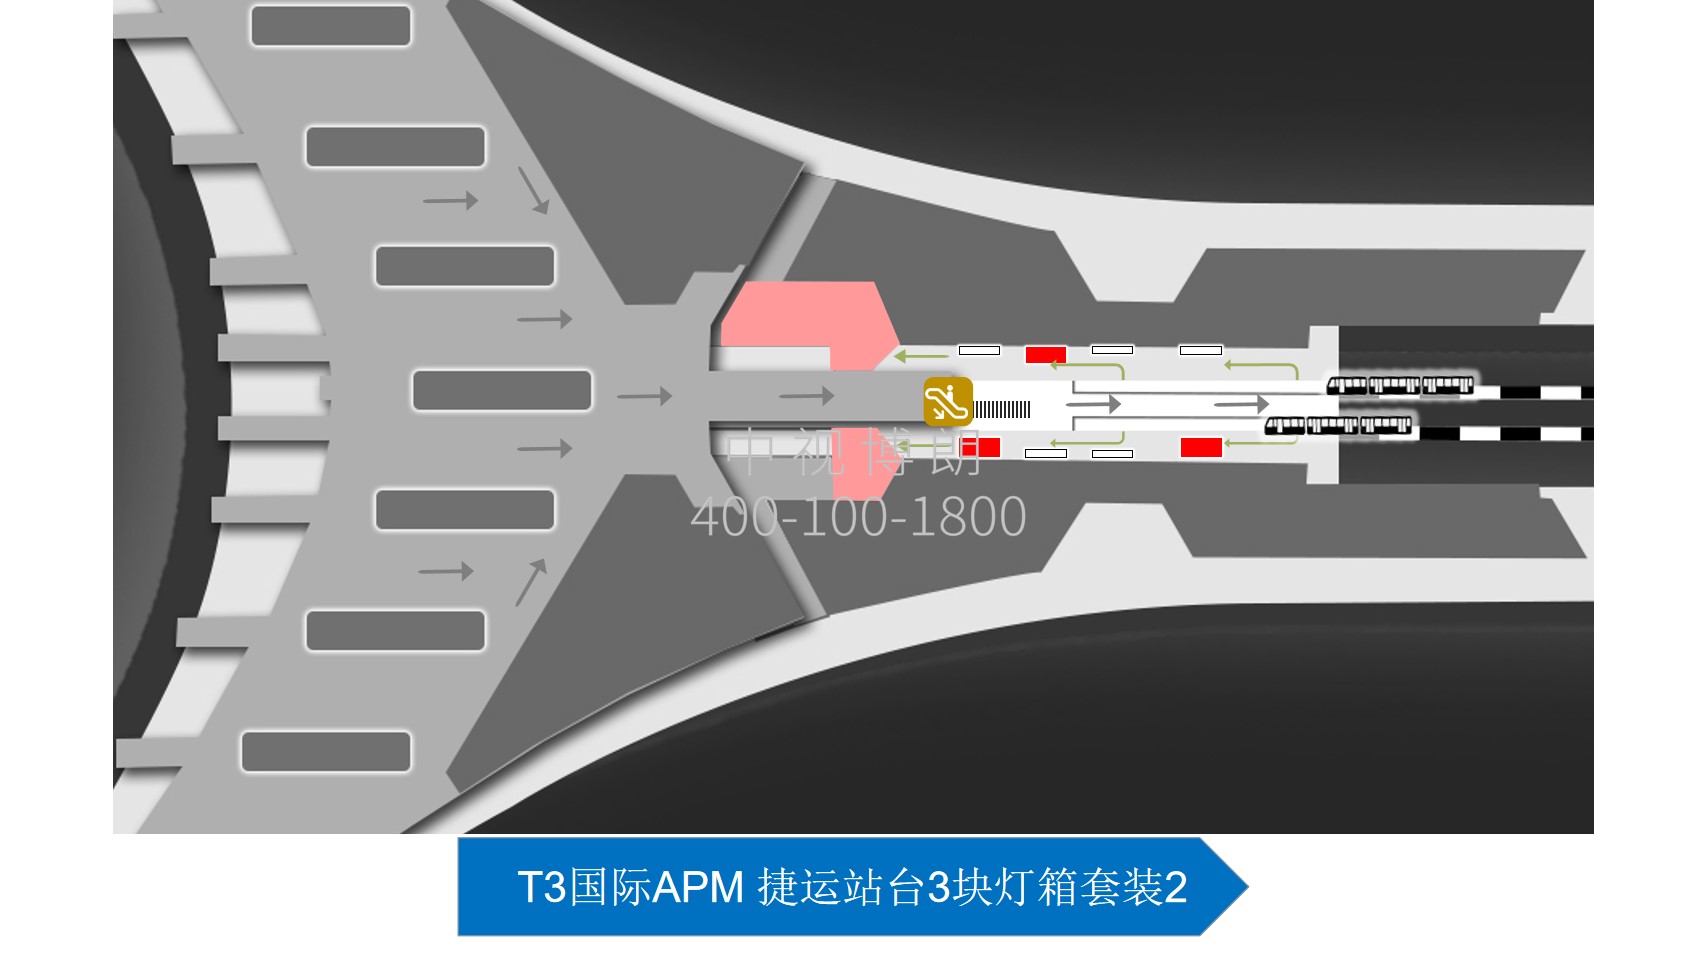 北京首都机场广告-T3国际APM 捷运站台灯箱套装2位置图